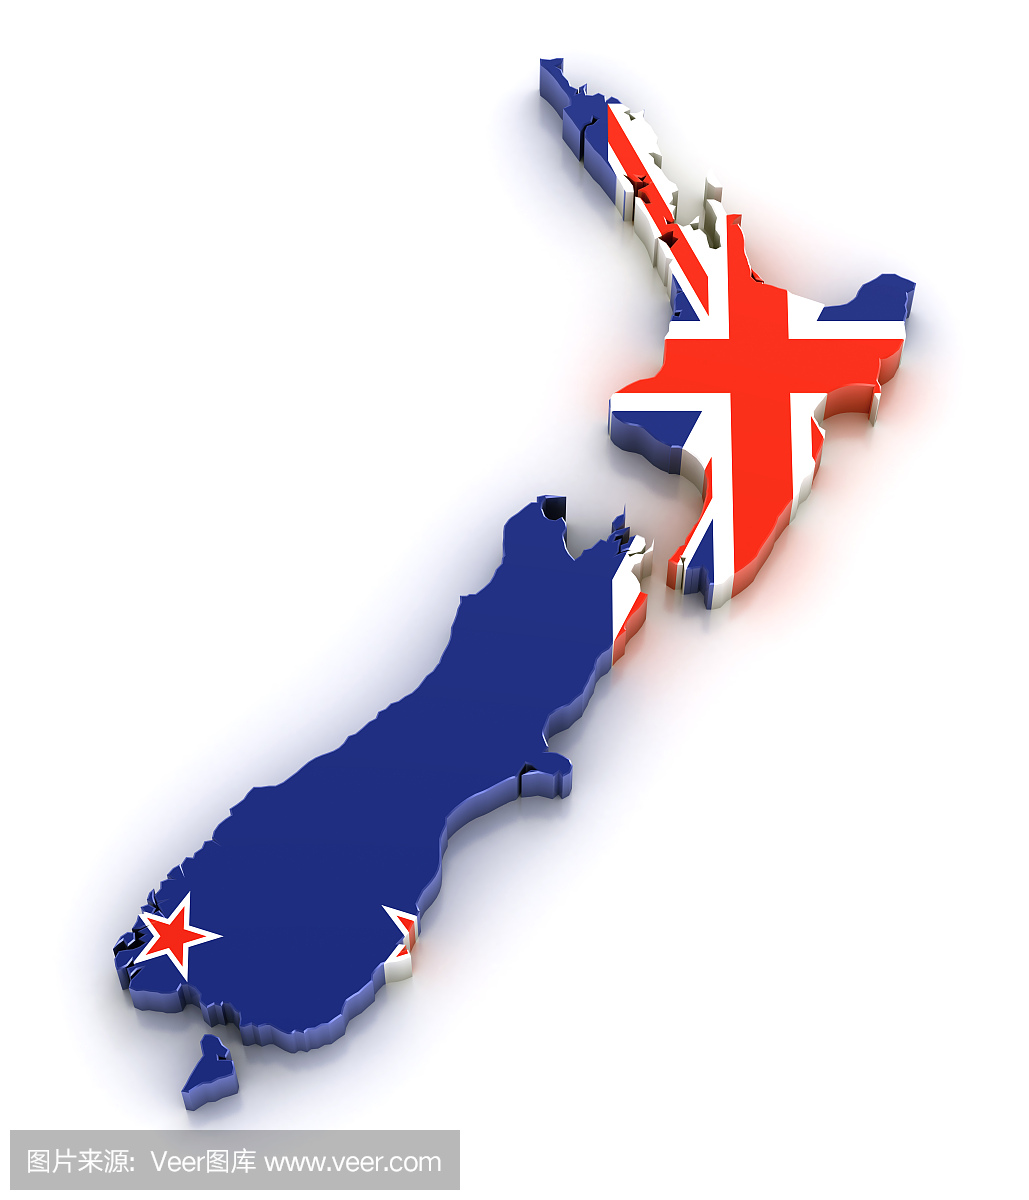 新西兰国旗,新西兰国,新西兰国国旗,新西兰旗